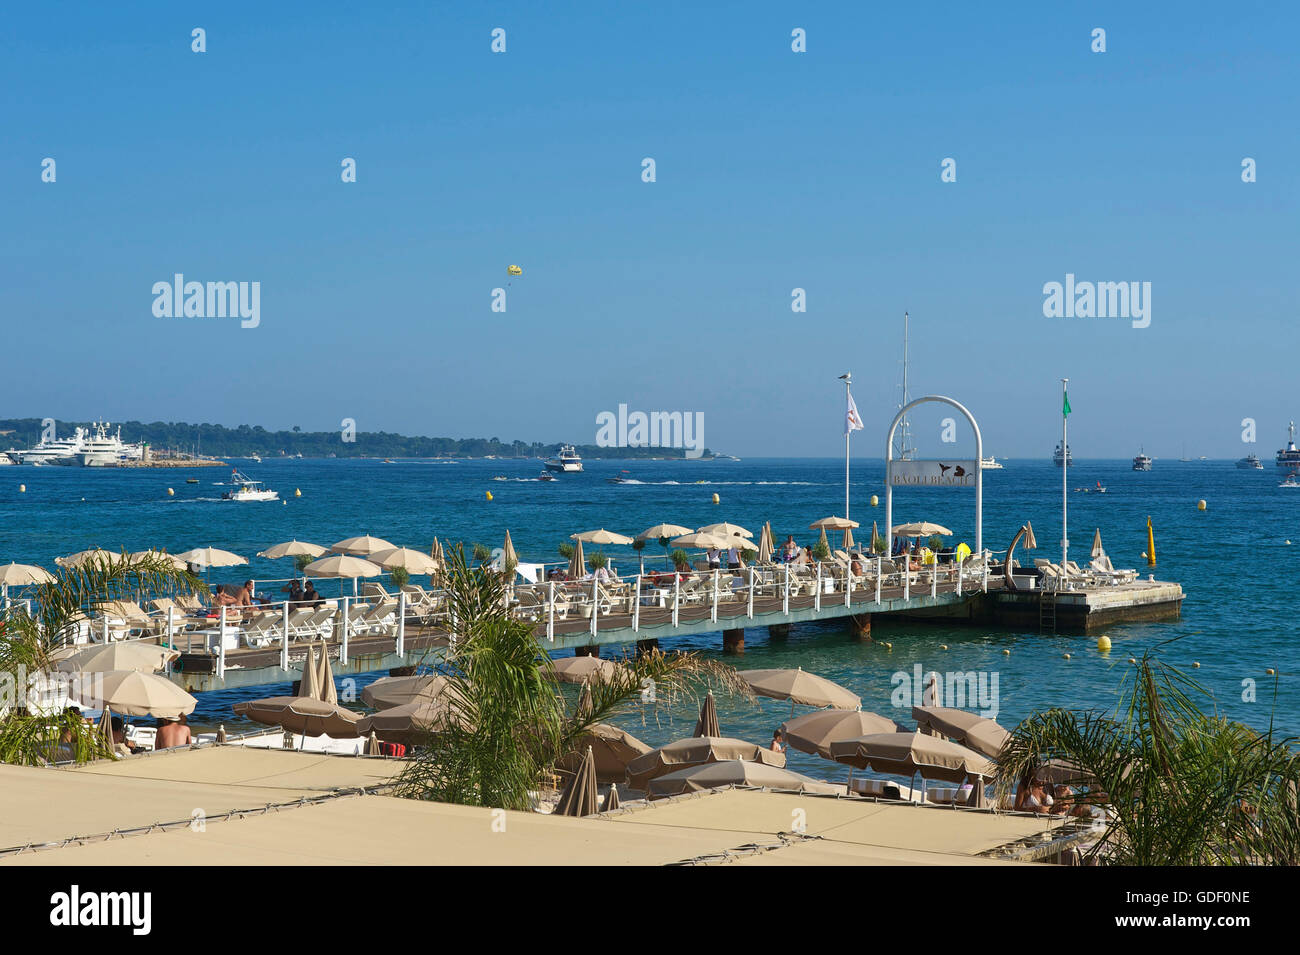 Beach, Croisette, Cannes, Cote d'Azur, France Stock Photo